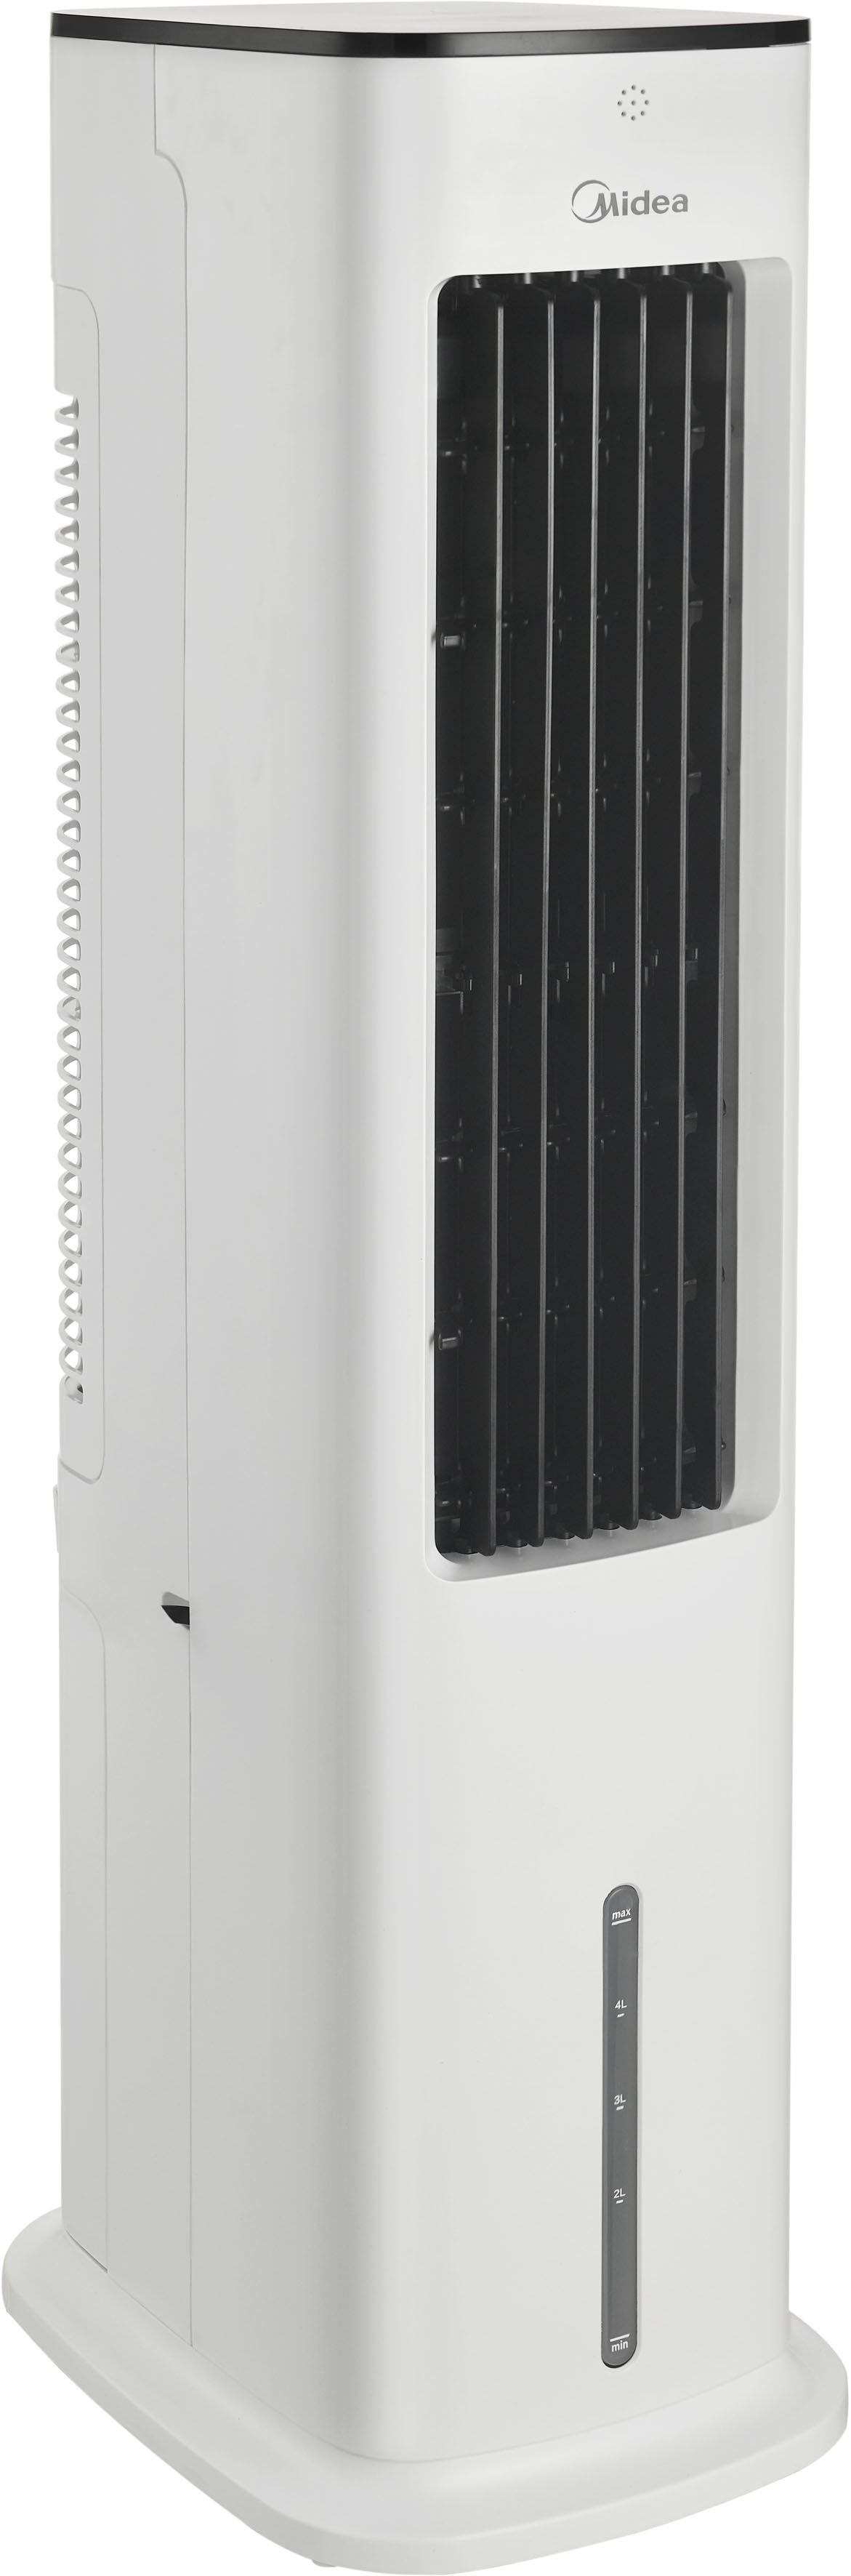 AC100-18B 90%Neu Klassisch Luftbefeuchter Ventilator Luftreiniger Weiß 5.6 Liter